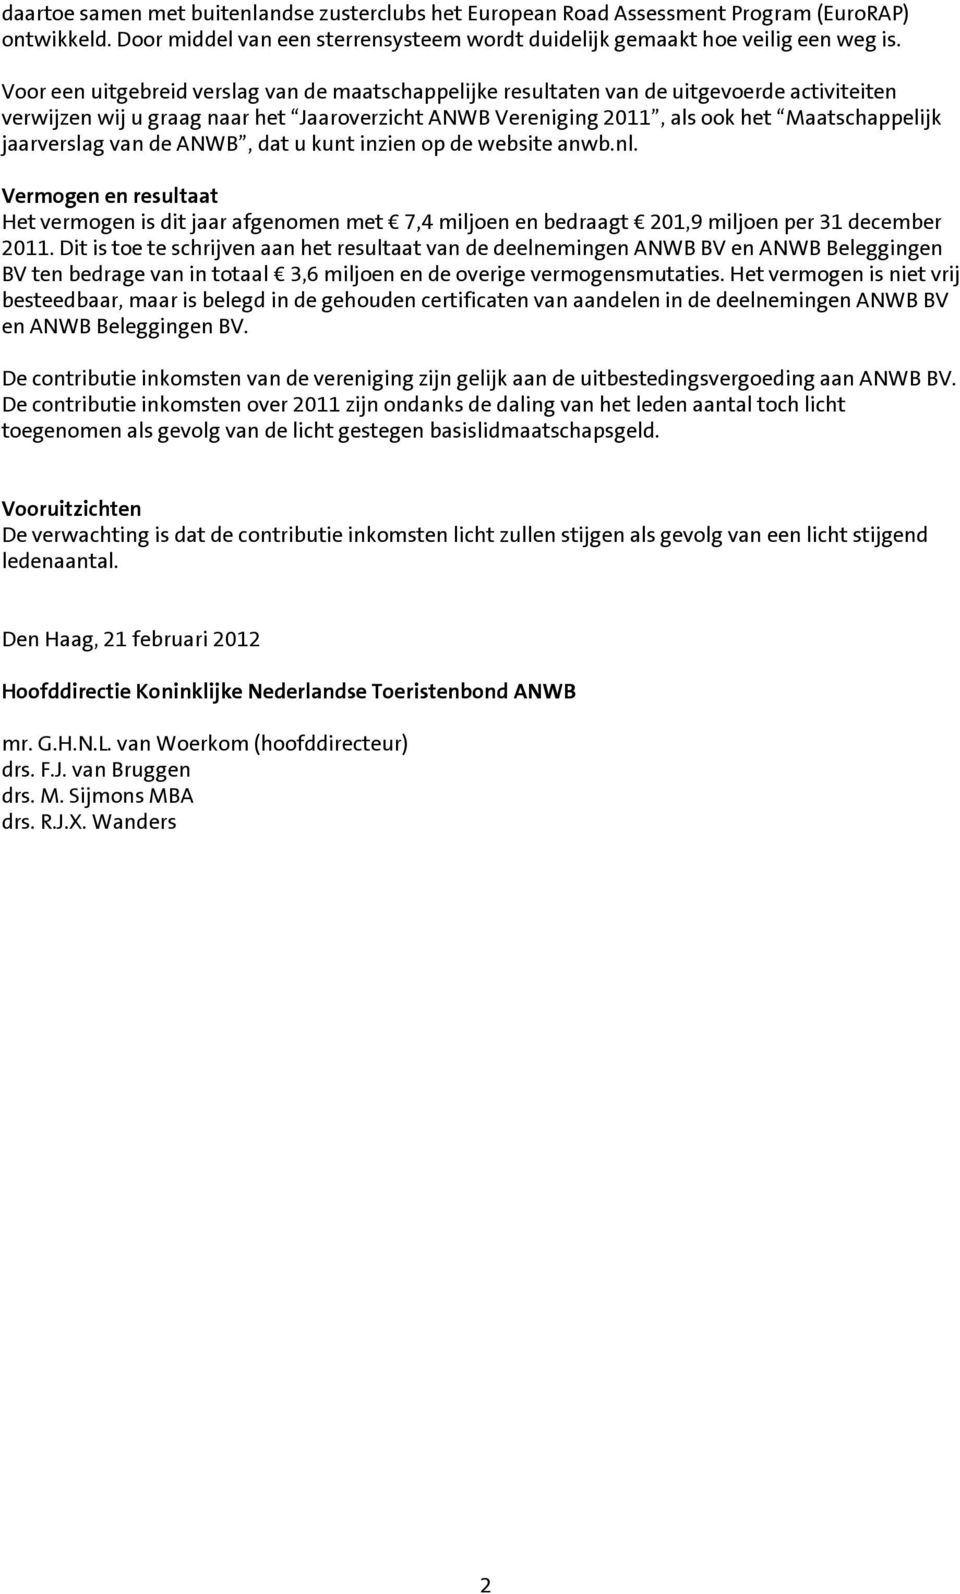 jaarverslag van de ANWB, dat u kunt inzien op de website anwb.nl. Vermogen en resultaat Het vermogen is dit jaar afgenomen met 7,4 miljoen en bedraagt 201,9 miljoen per 31 december 2011.